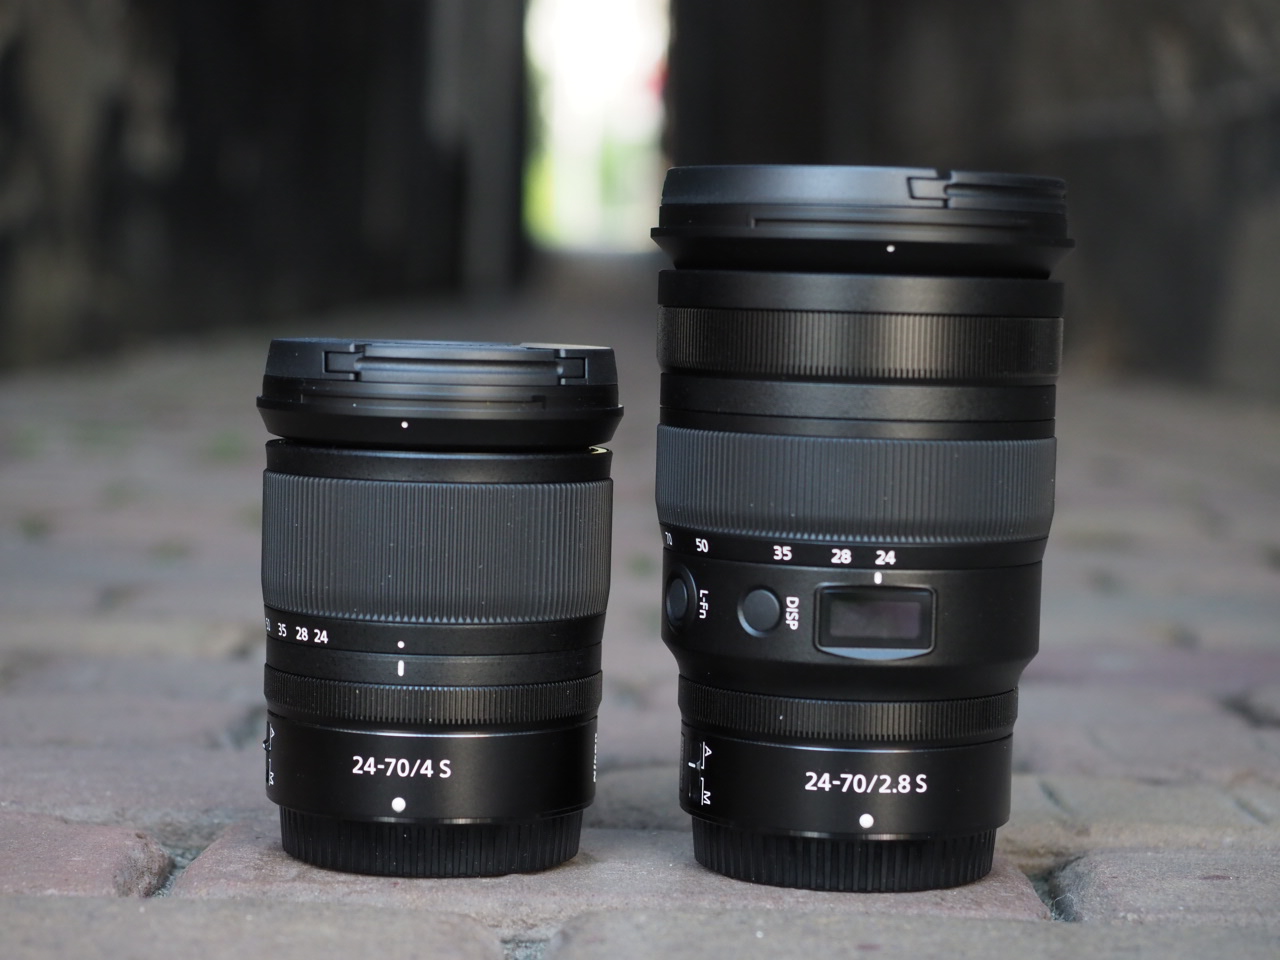 Nikon Nikkor Z 24-70mm f/2.8 S lens now in stock - Nikon Rumors